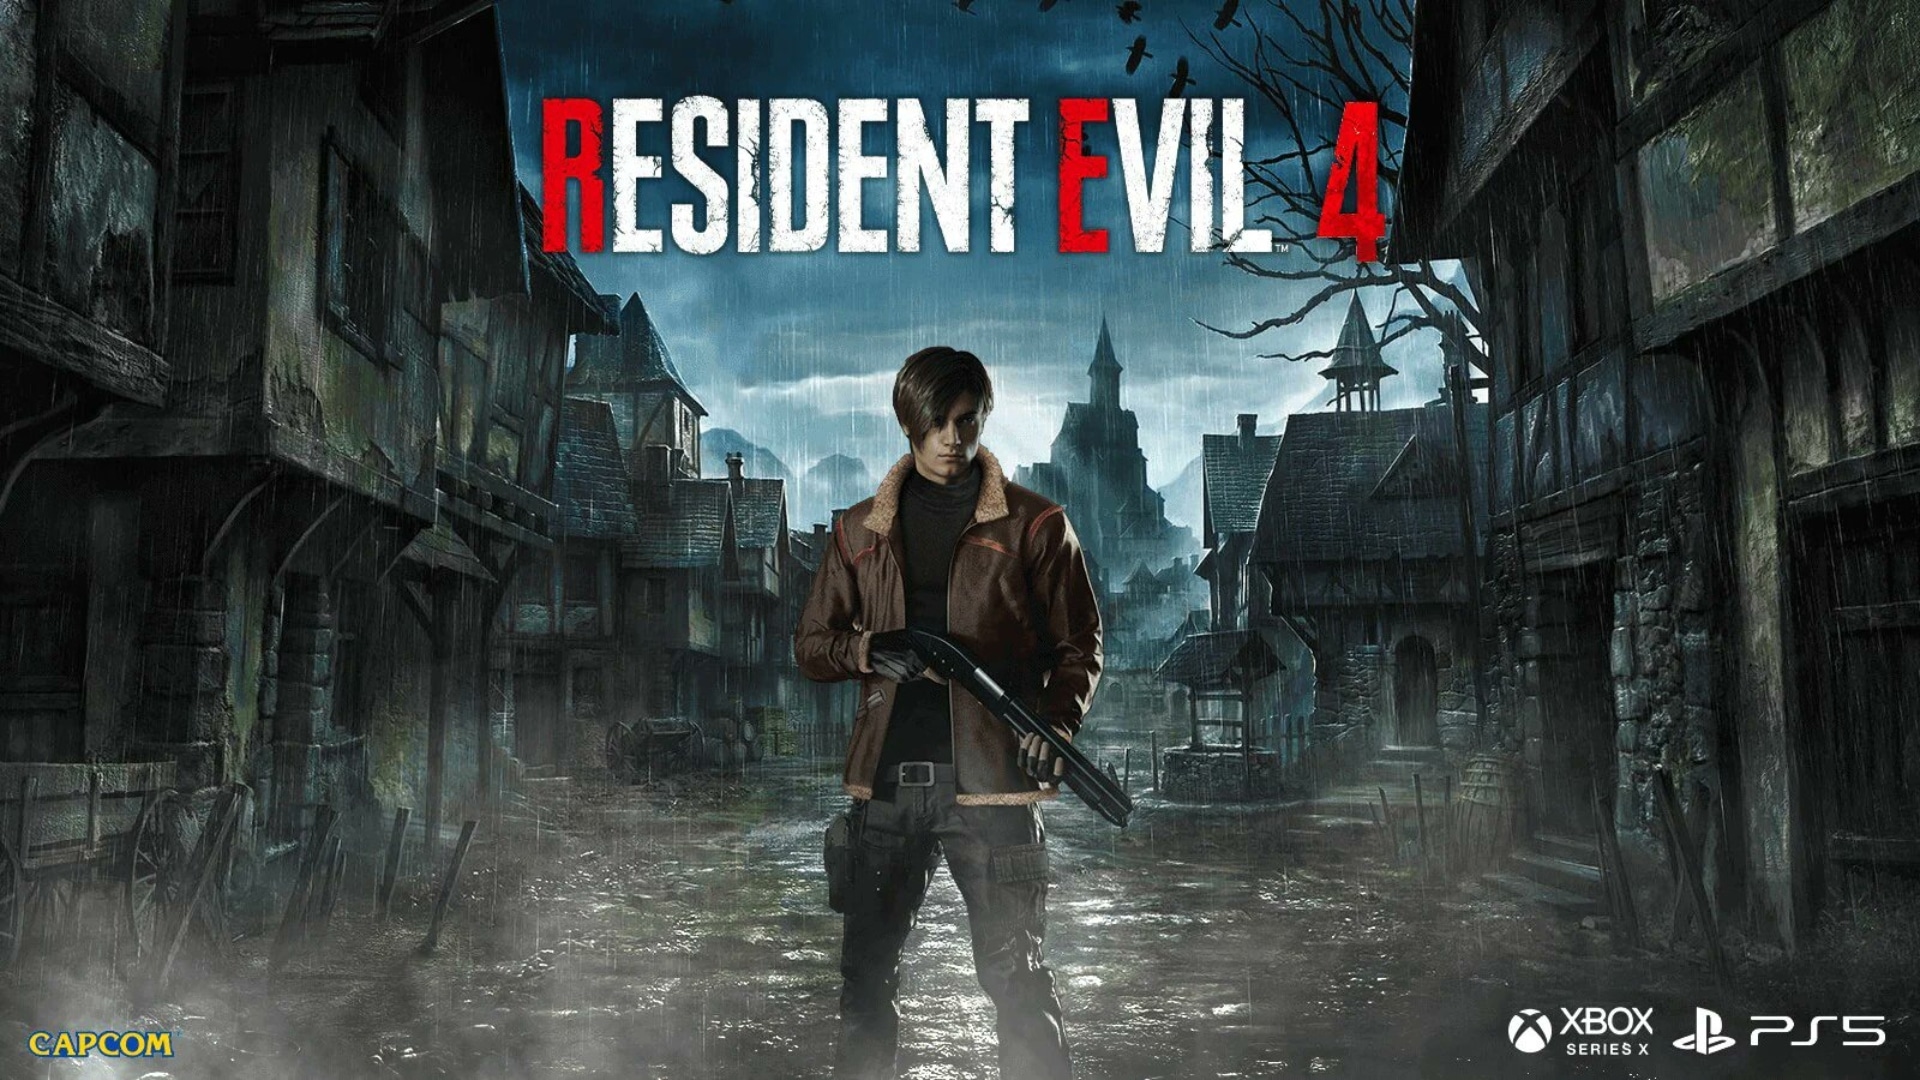 Resident-Evil-4-First-Image-Leaked2-GamersRD (1) (1)